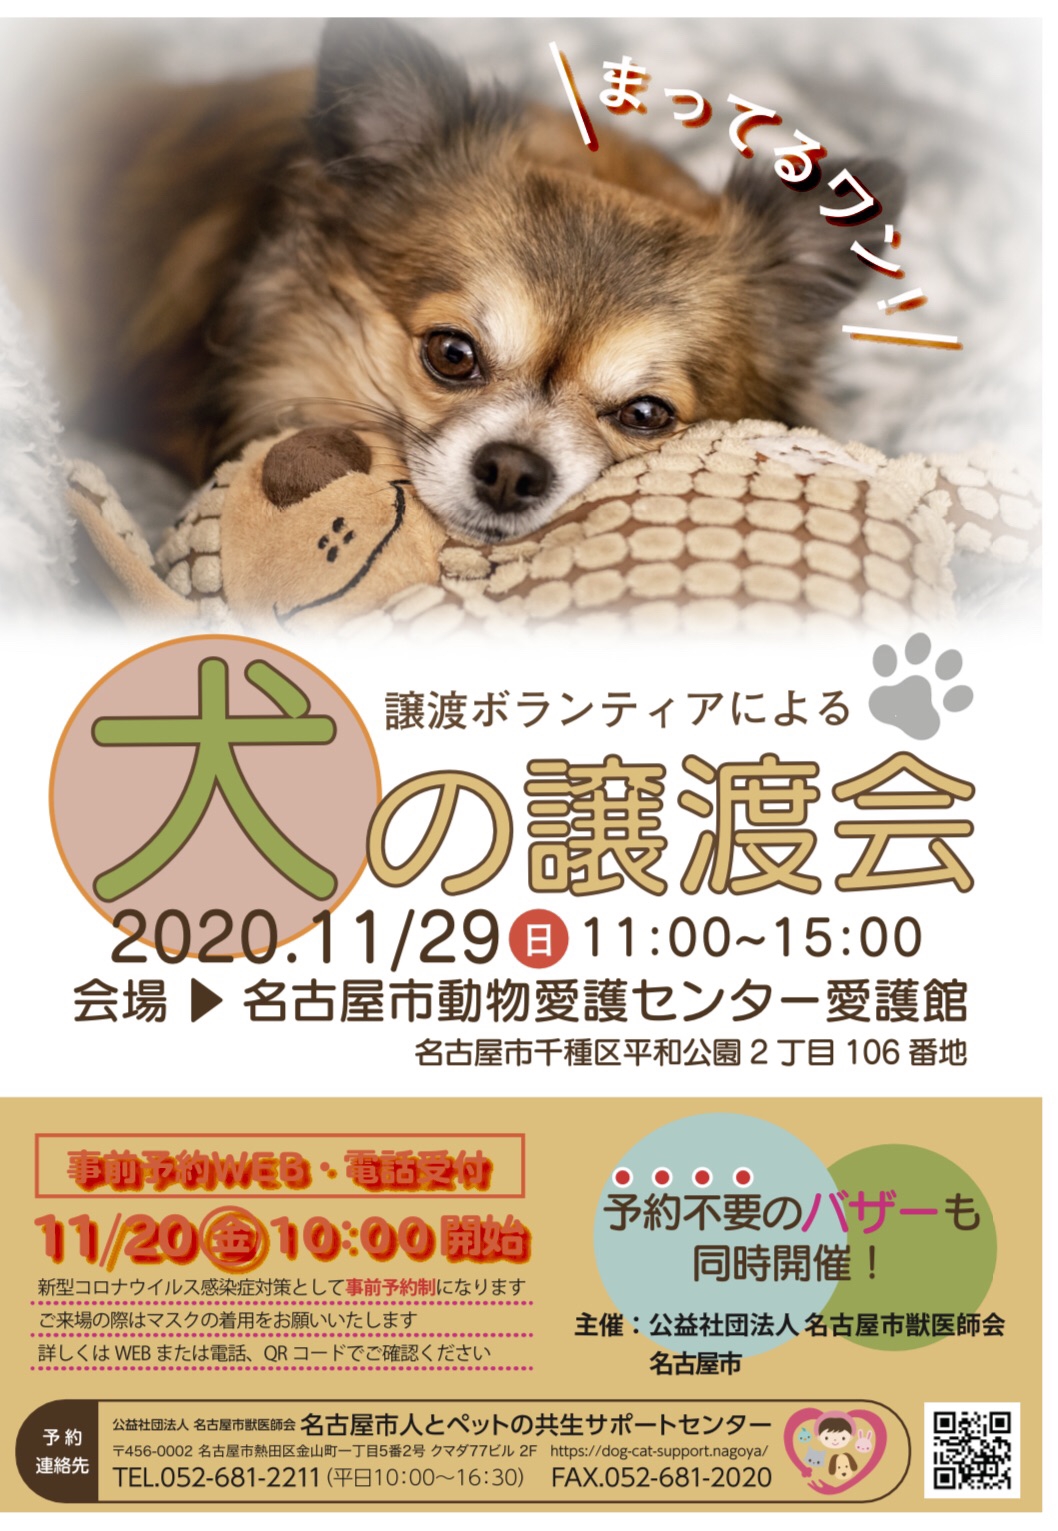 名古屋市動物愛護センター 犬の譲渡会 Wan S Pono